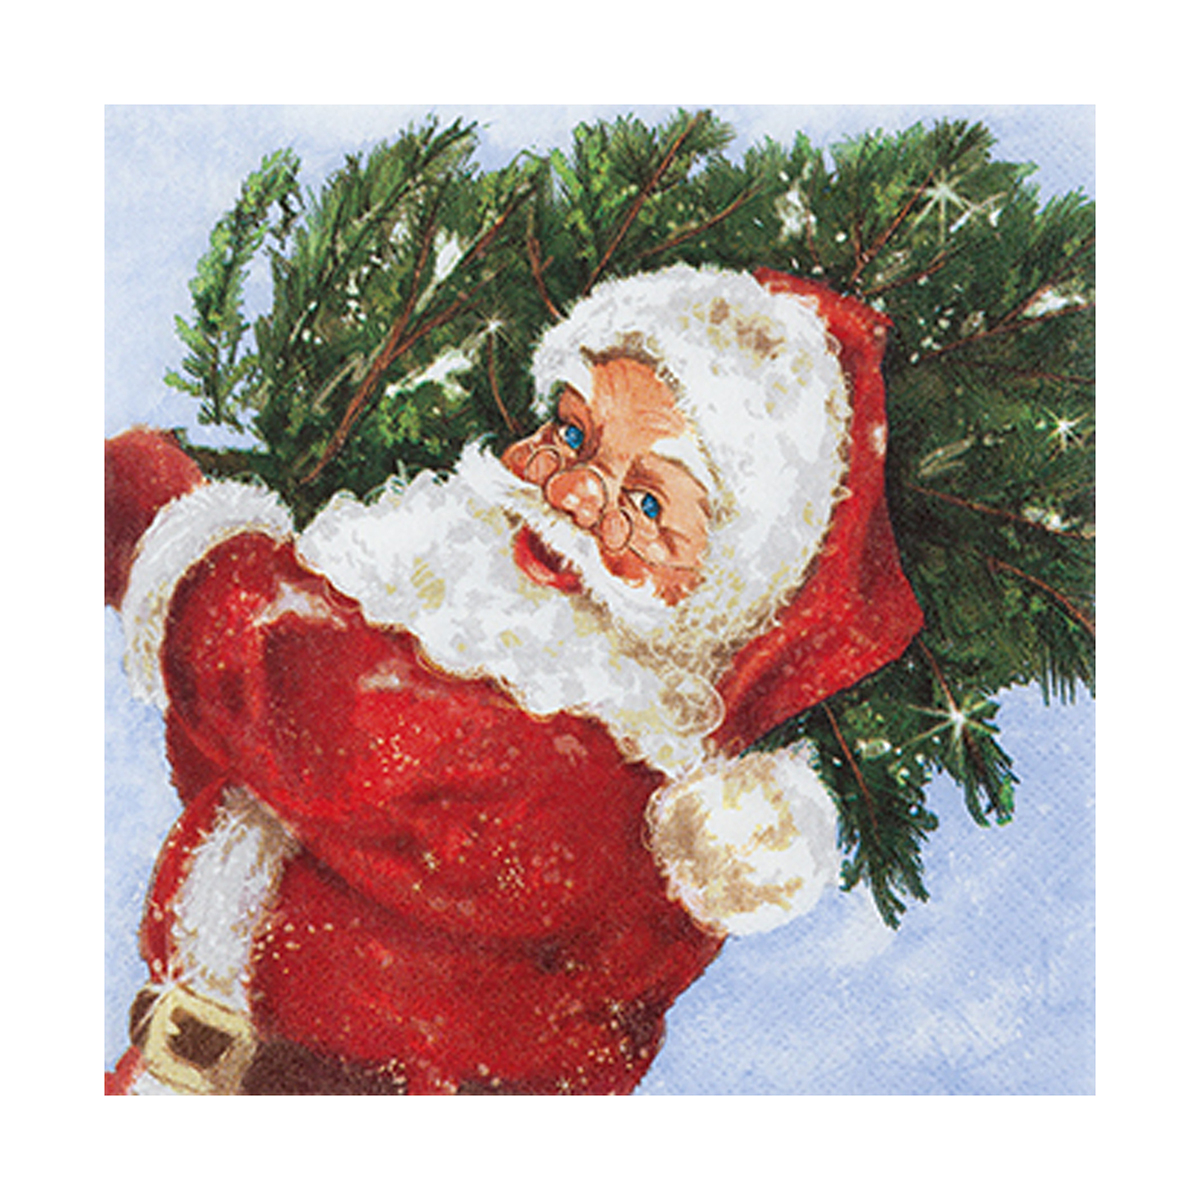 Χριστουγεννιάτικες Χαρτοπετσέτες Σετ 20τμχ (33×33) L-C Santa With His Tree 6SNL446